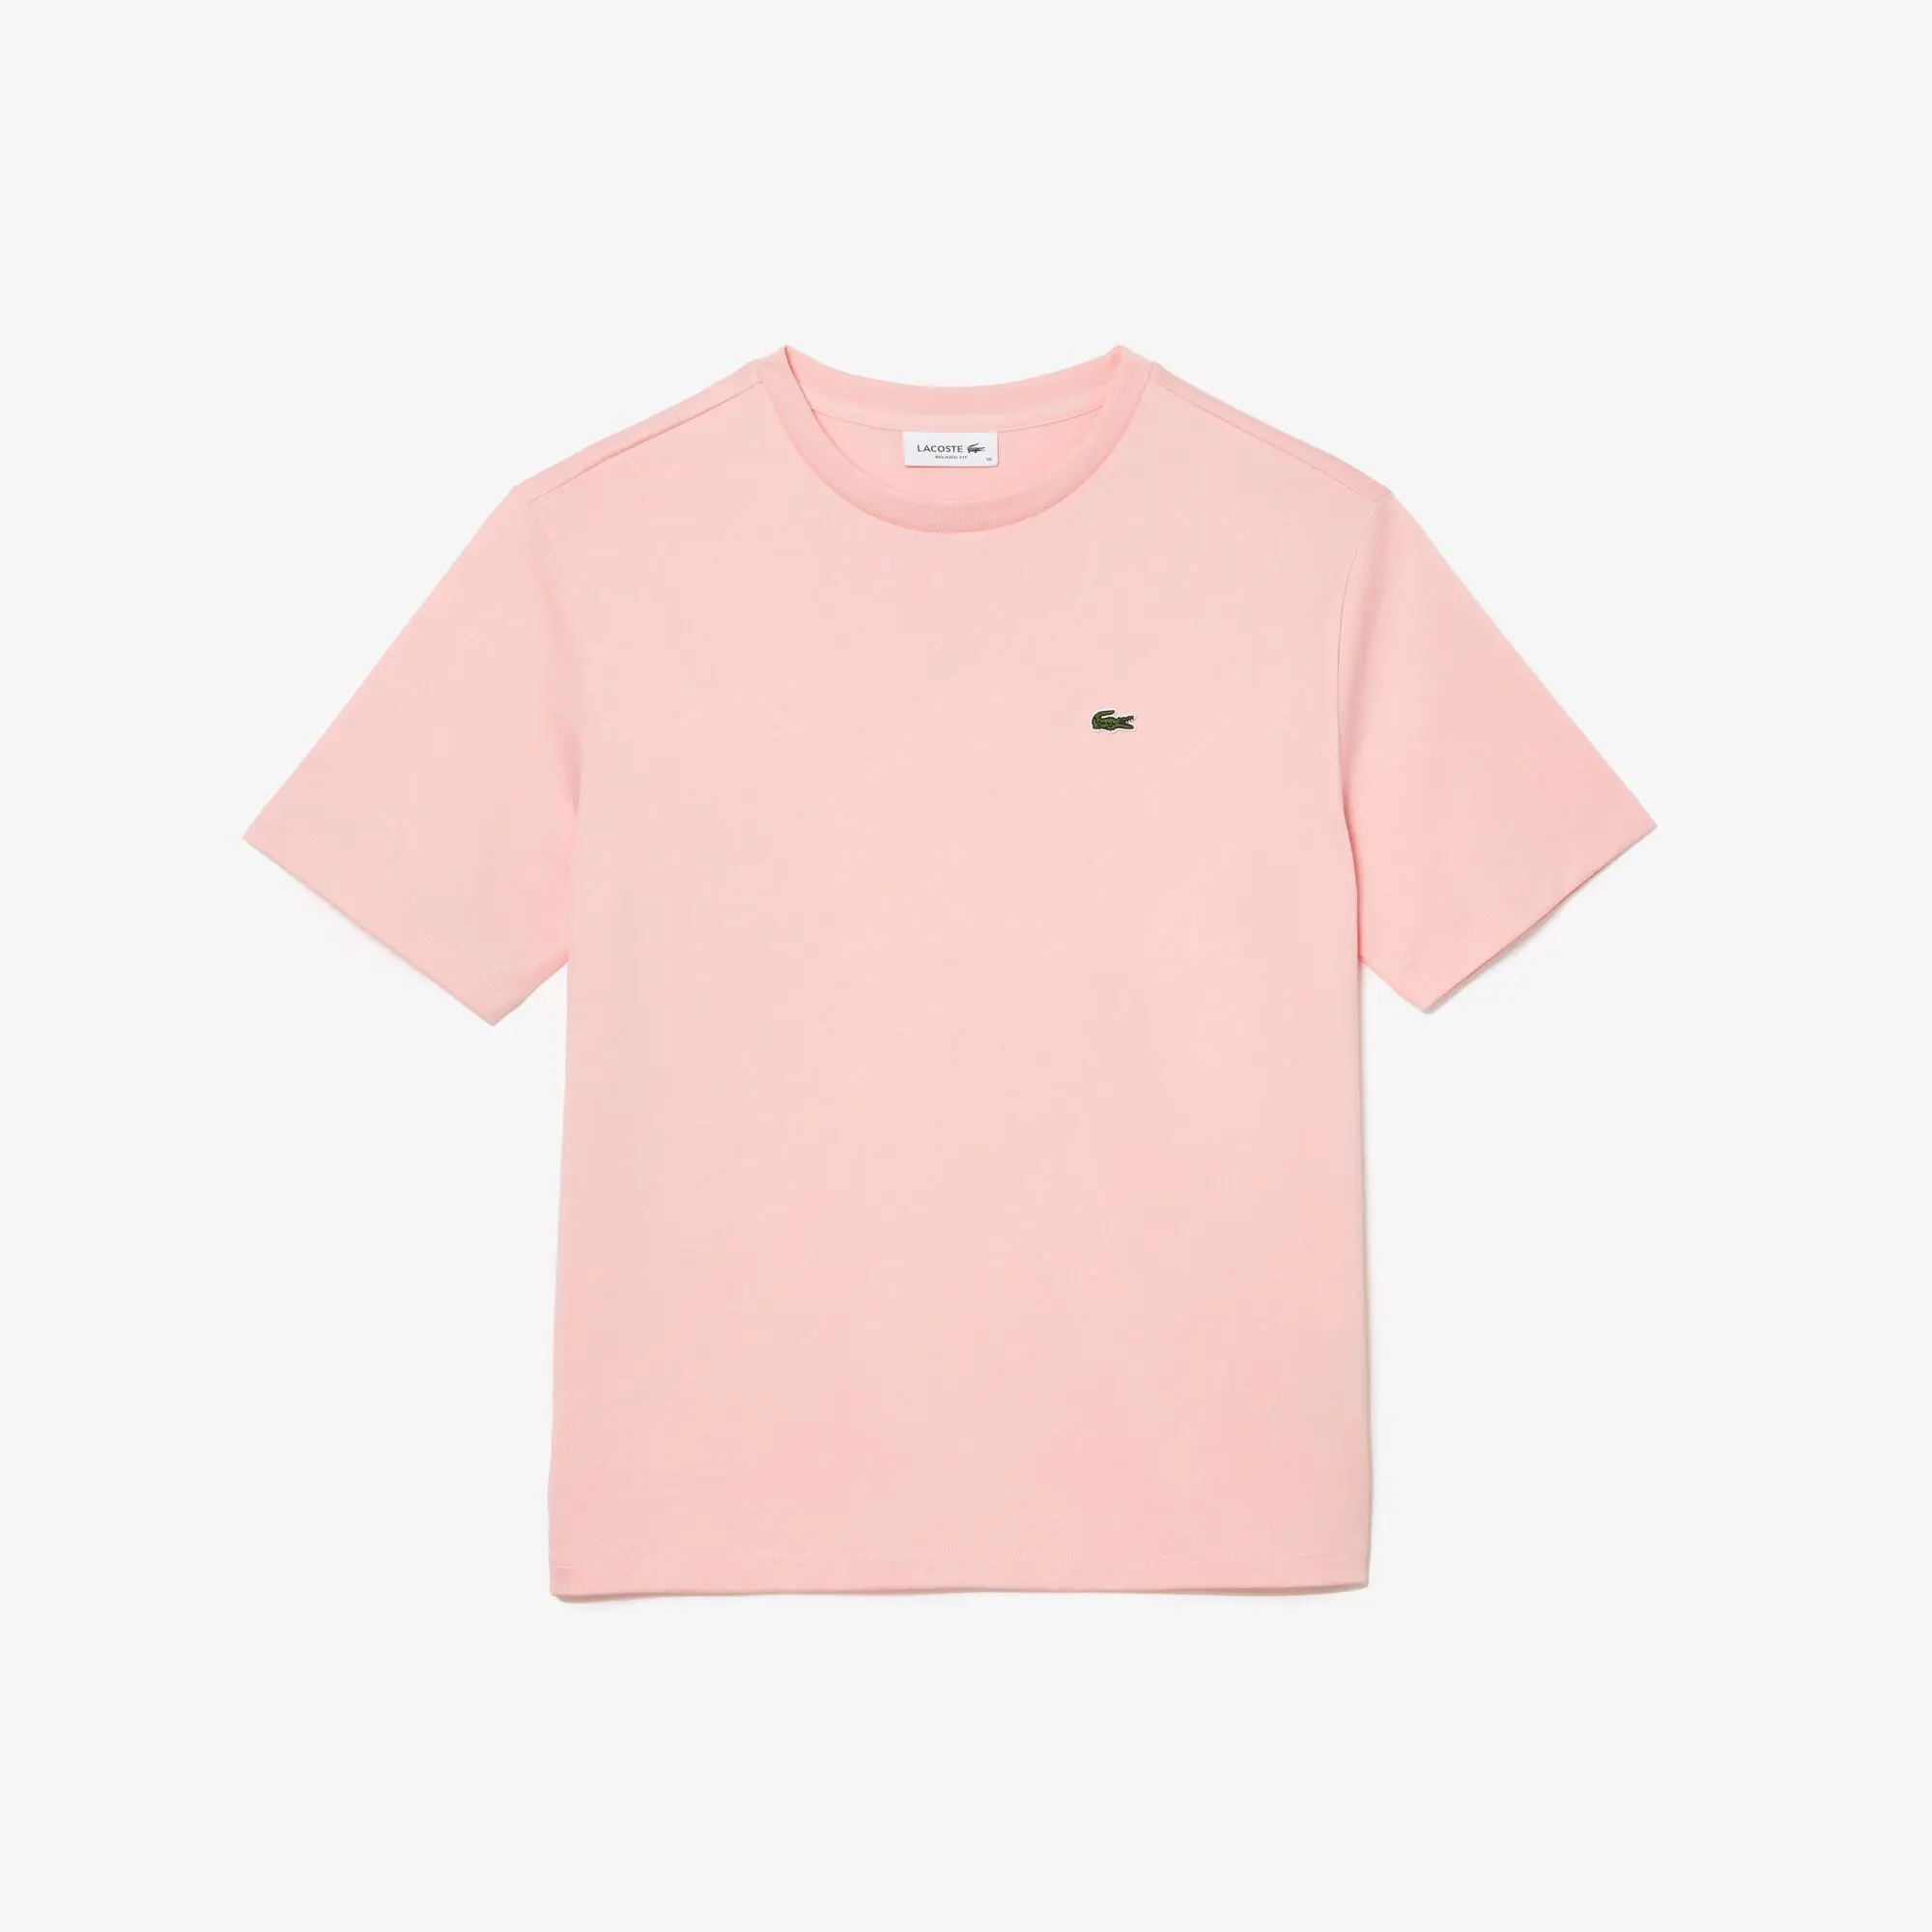 Lacoste Women’s Crew Neck Premium Cotton T-shirt. 2